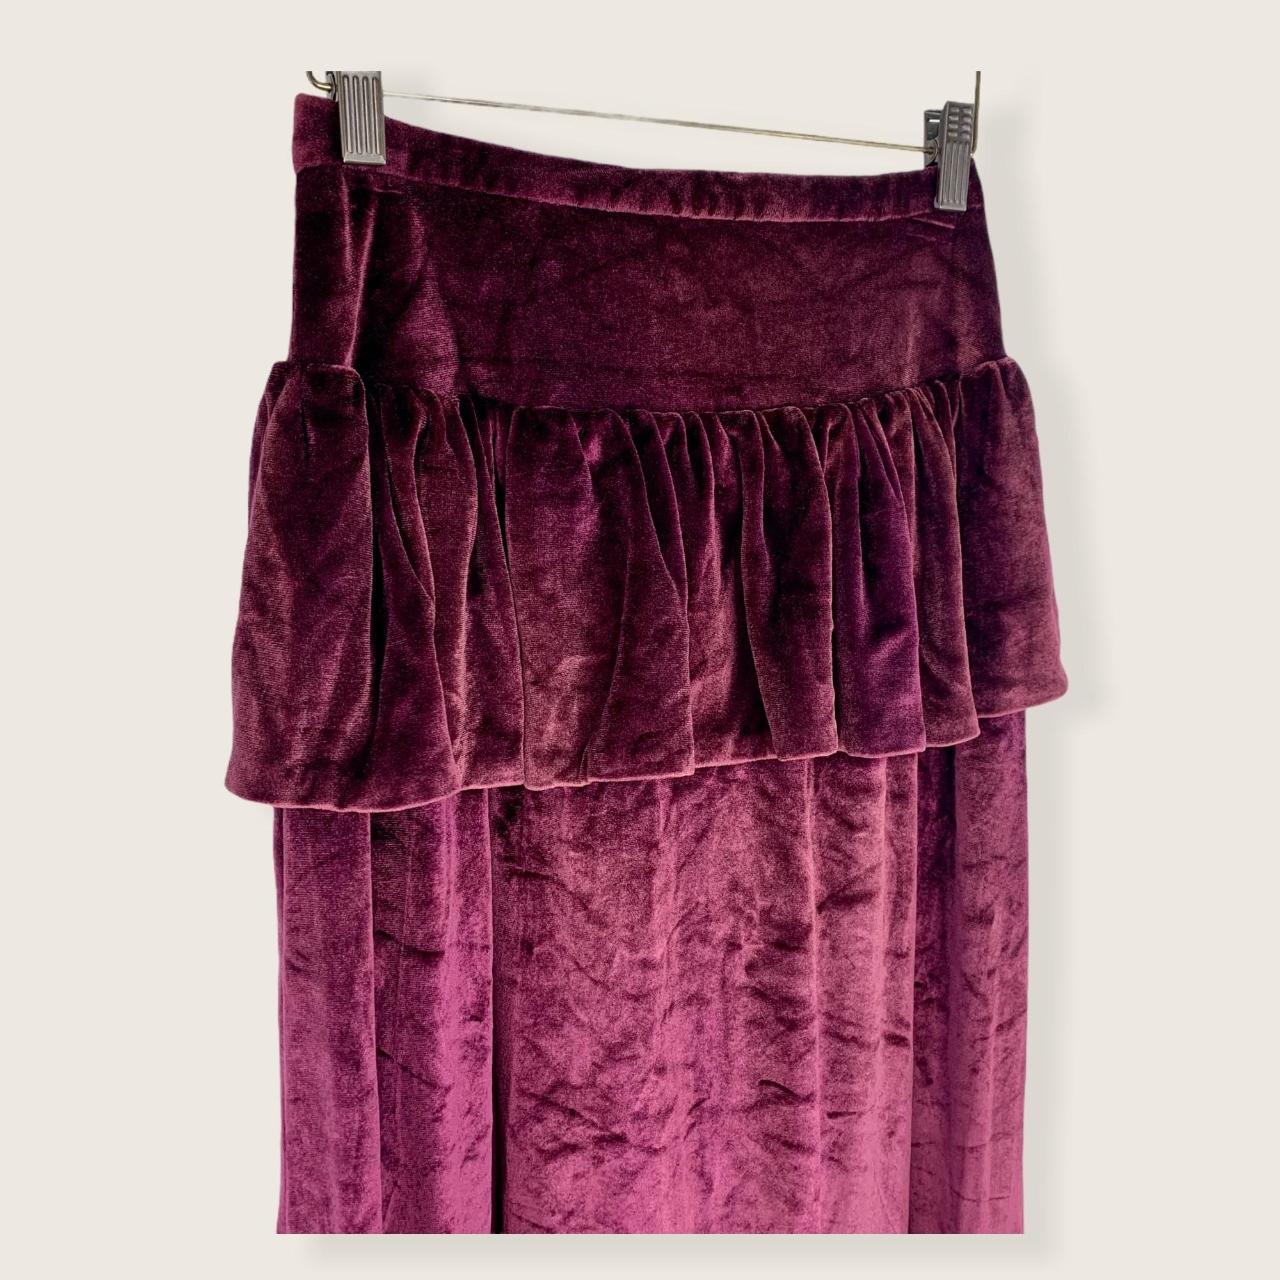 Product Image 2 - Handmade Crush Velvet Maxi Skirt
Back